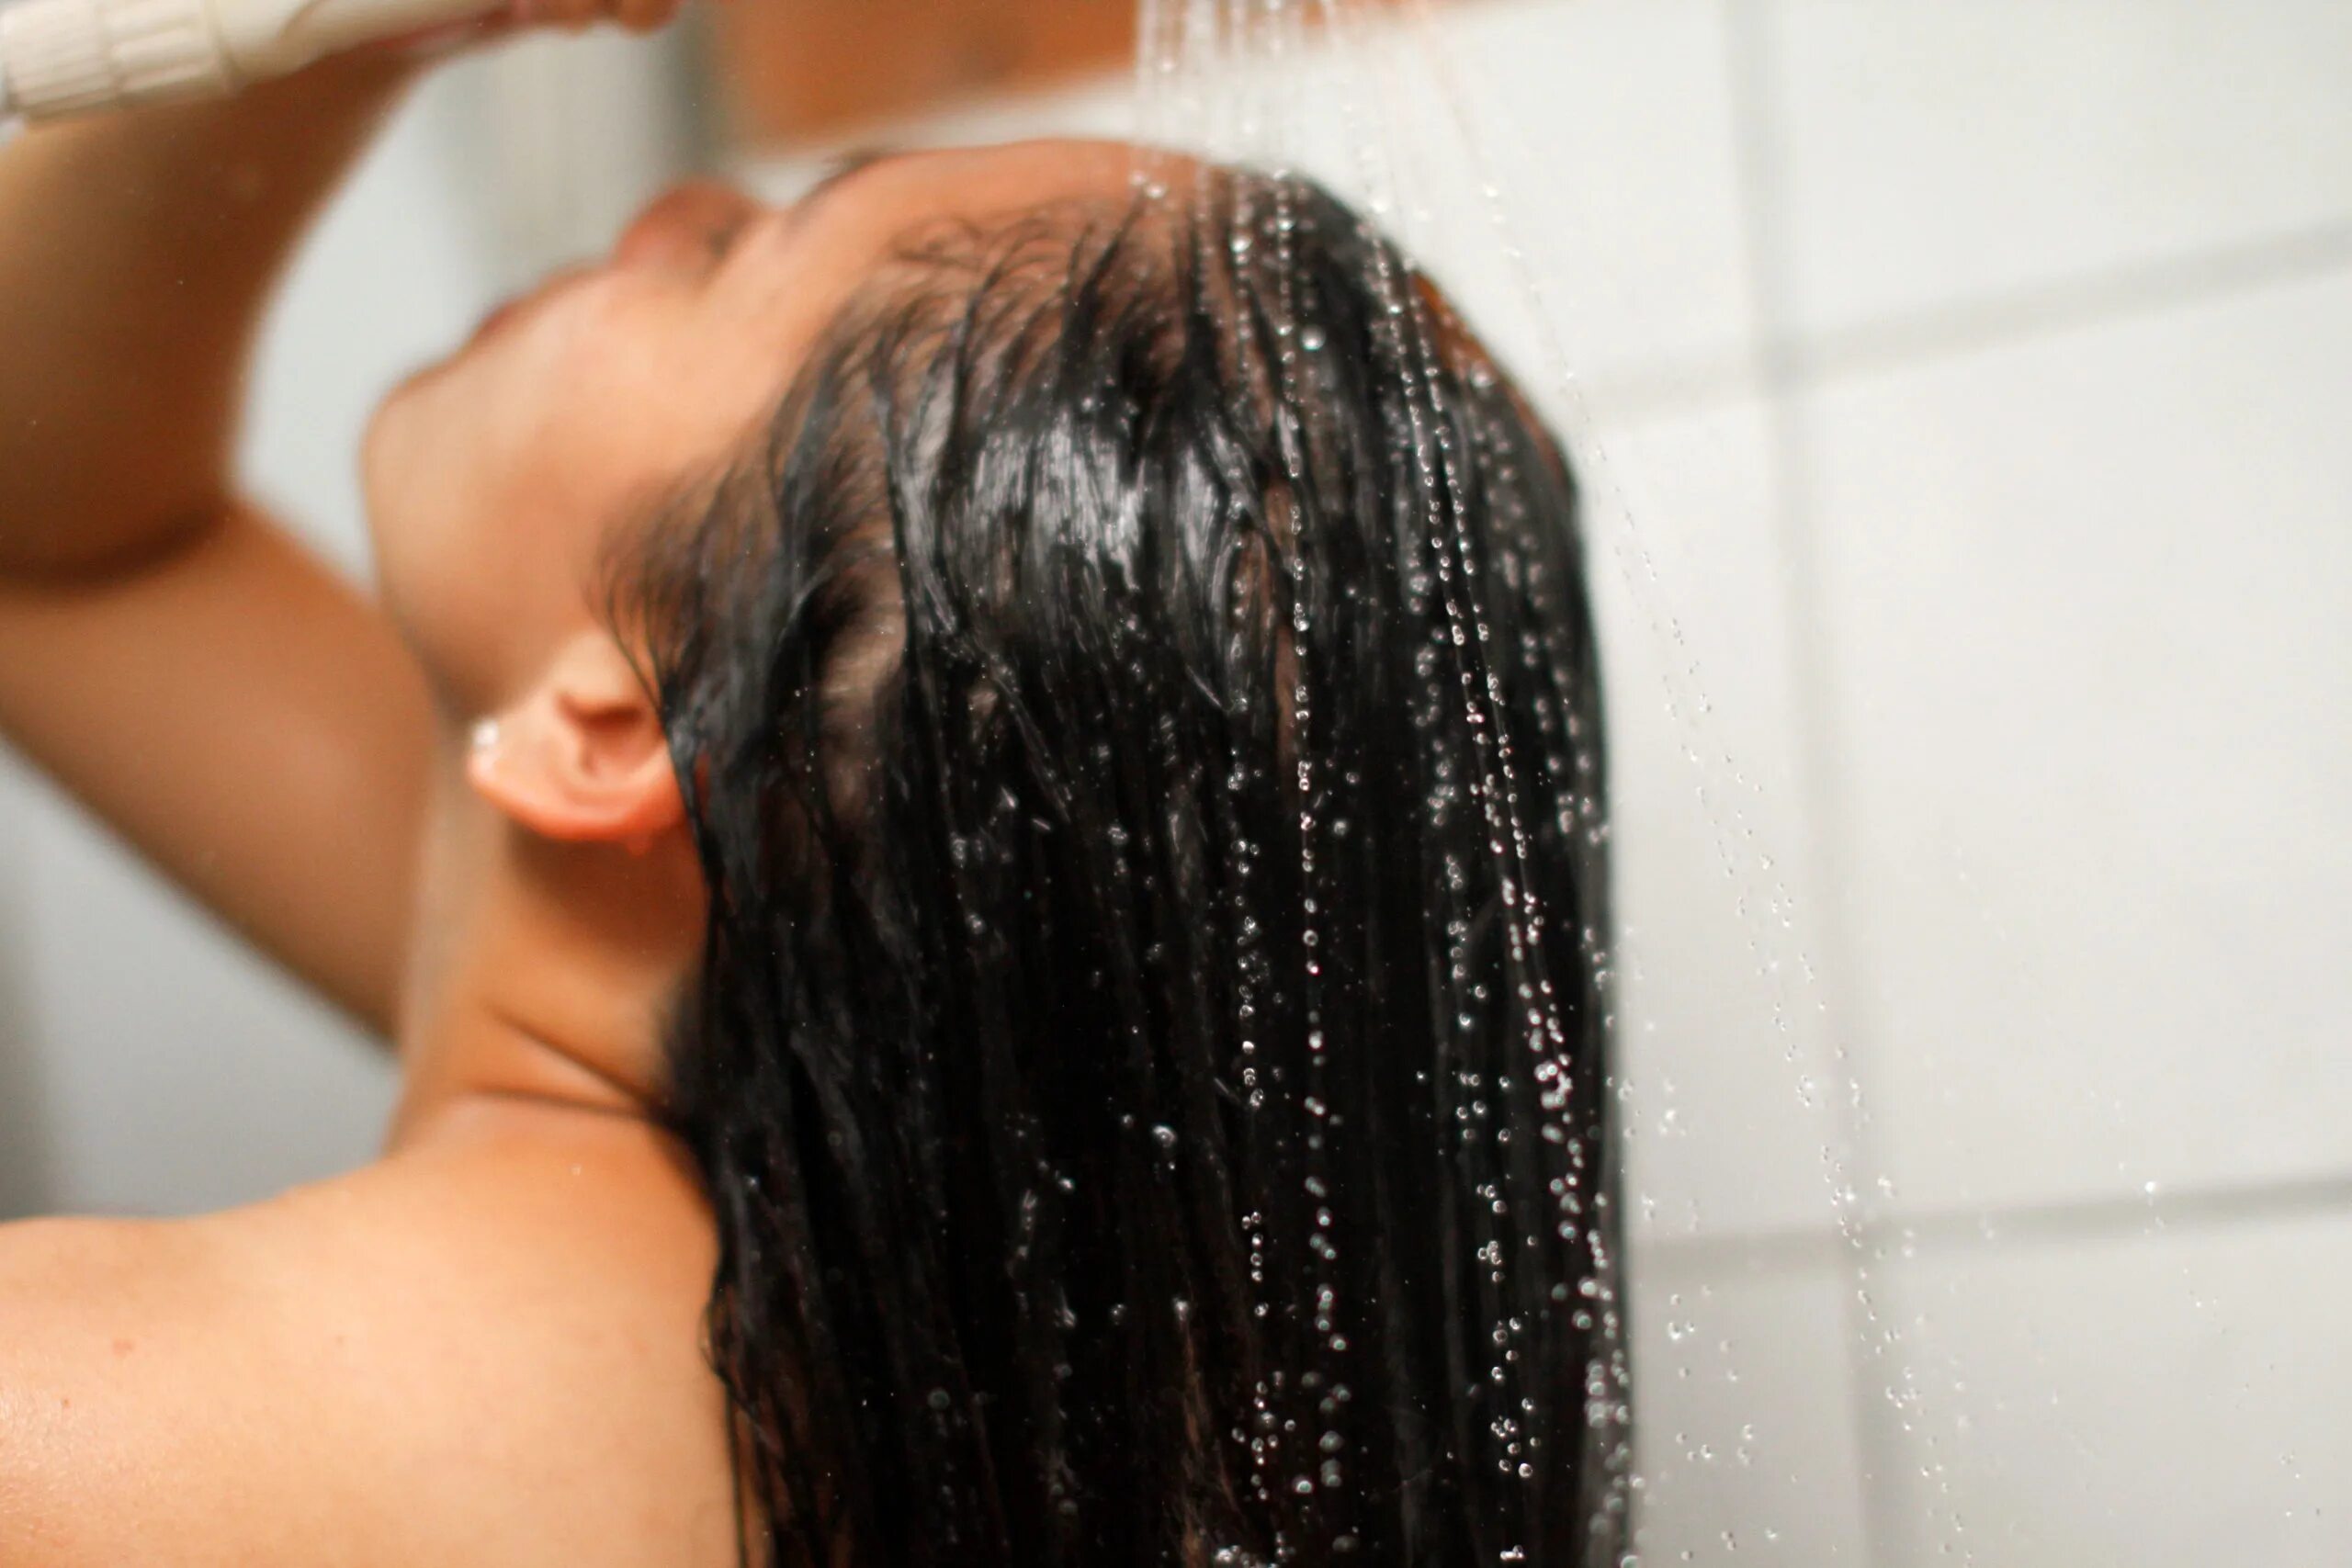 Мытье волос. Мыть голову. Мокрые длинные волосы. Вода для ополаскивания волос. Shower brunette